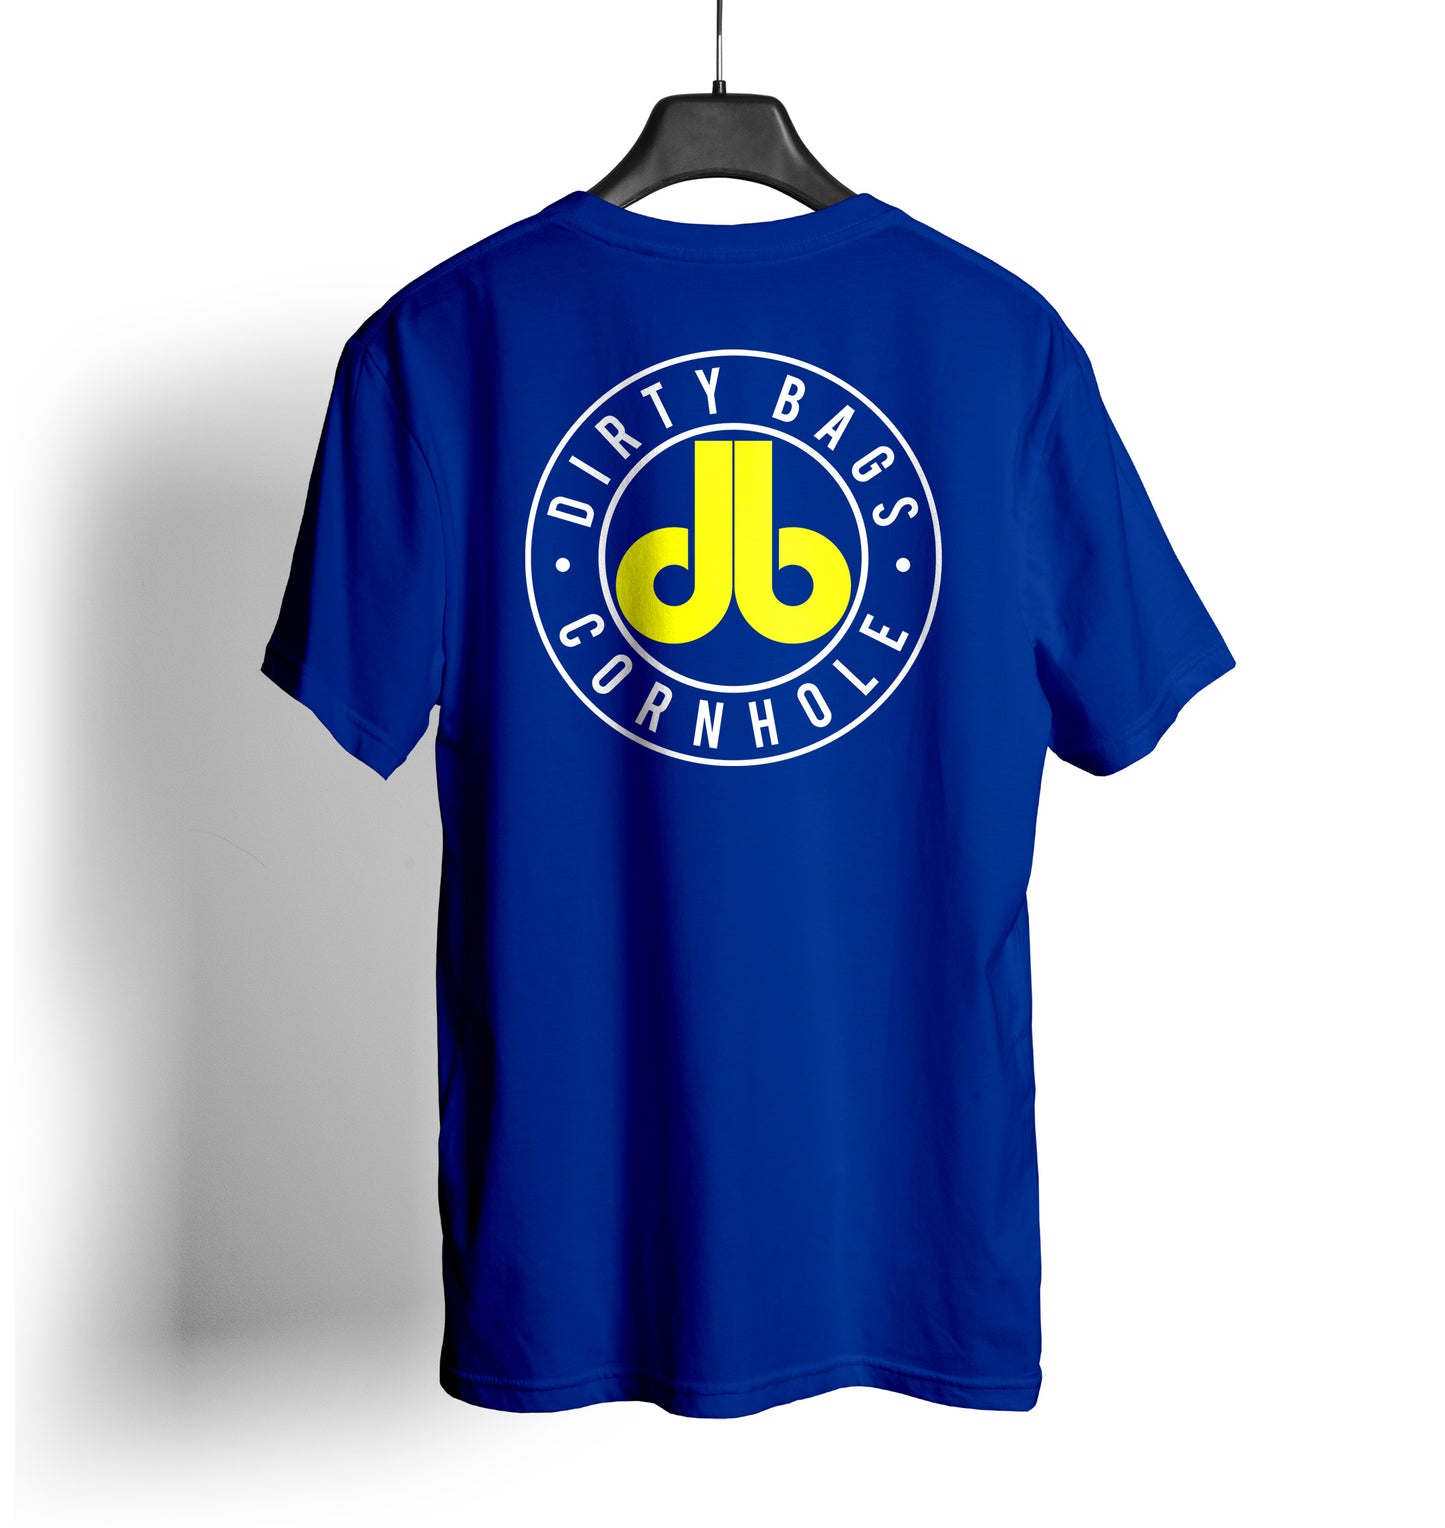 db Cornhole T Shirt - Blue and Yellow